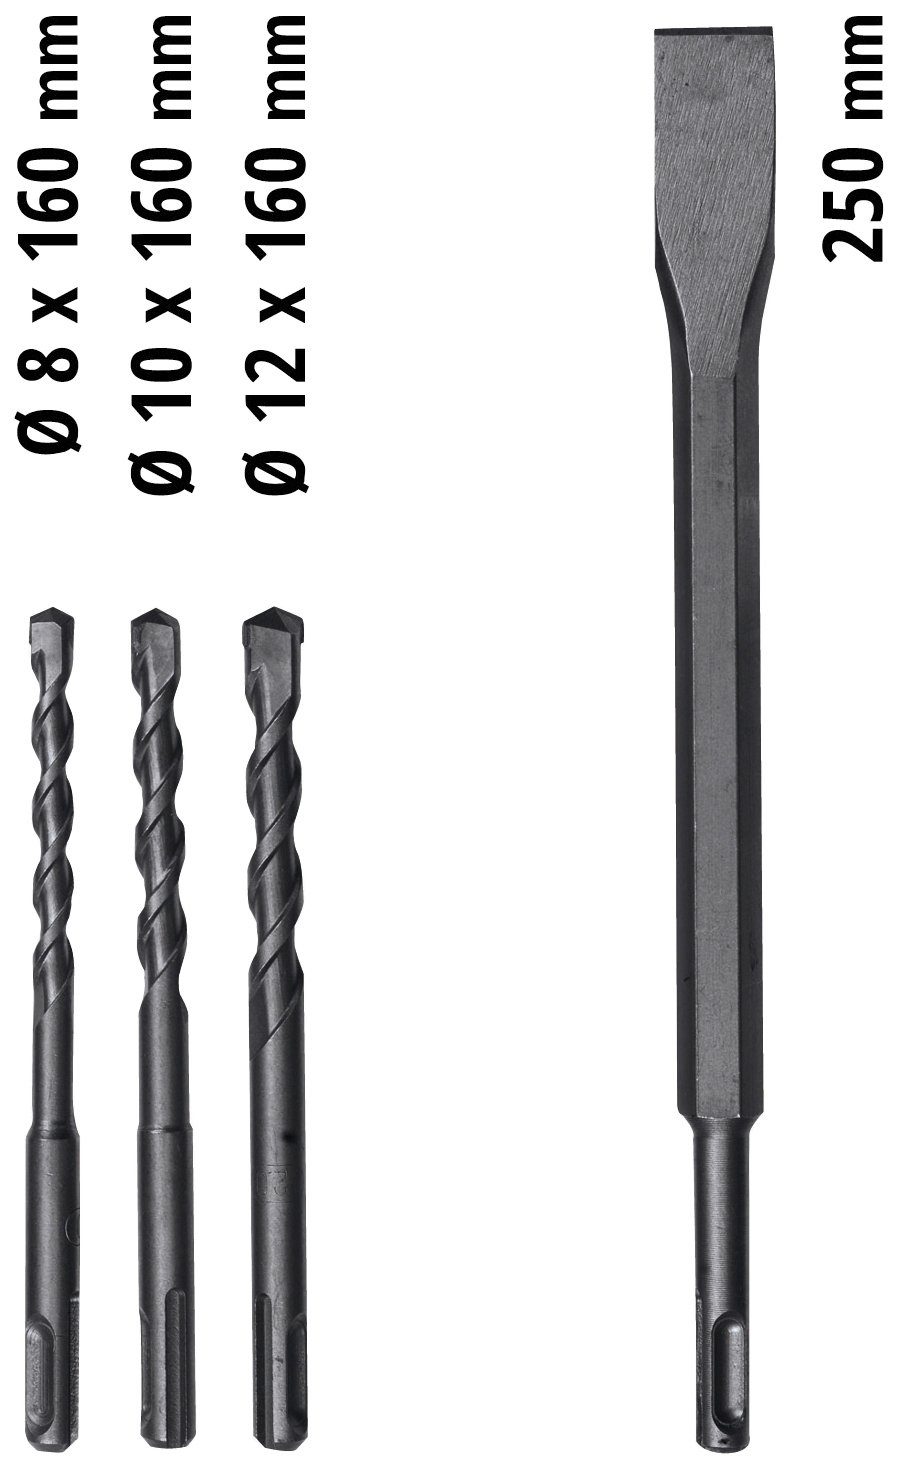 V Bohrhammer TC-RH 230 4F 620 Kit, Einhell